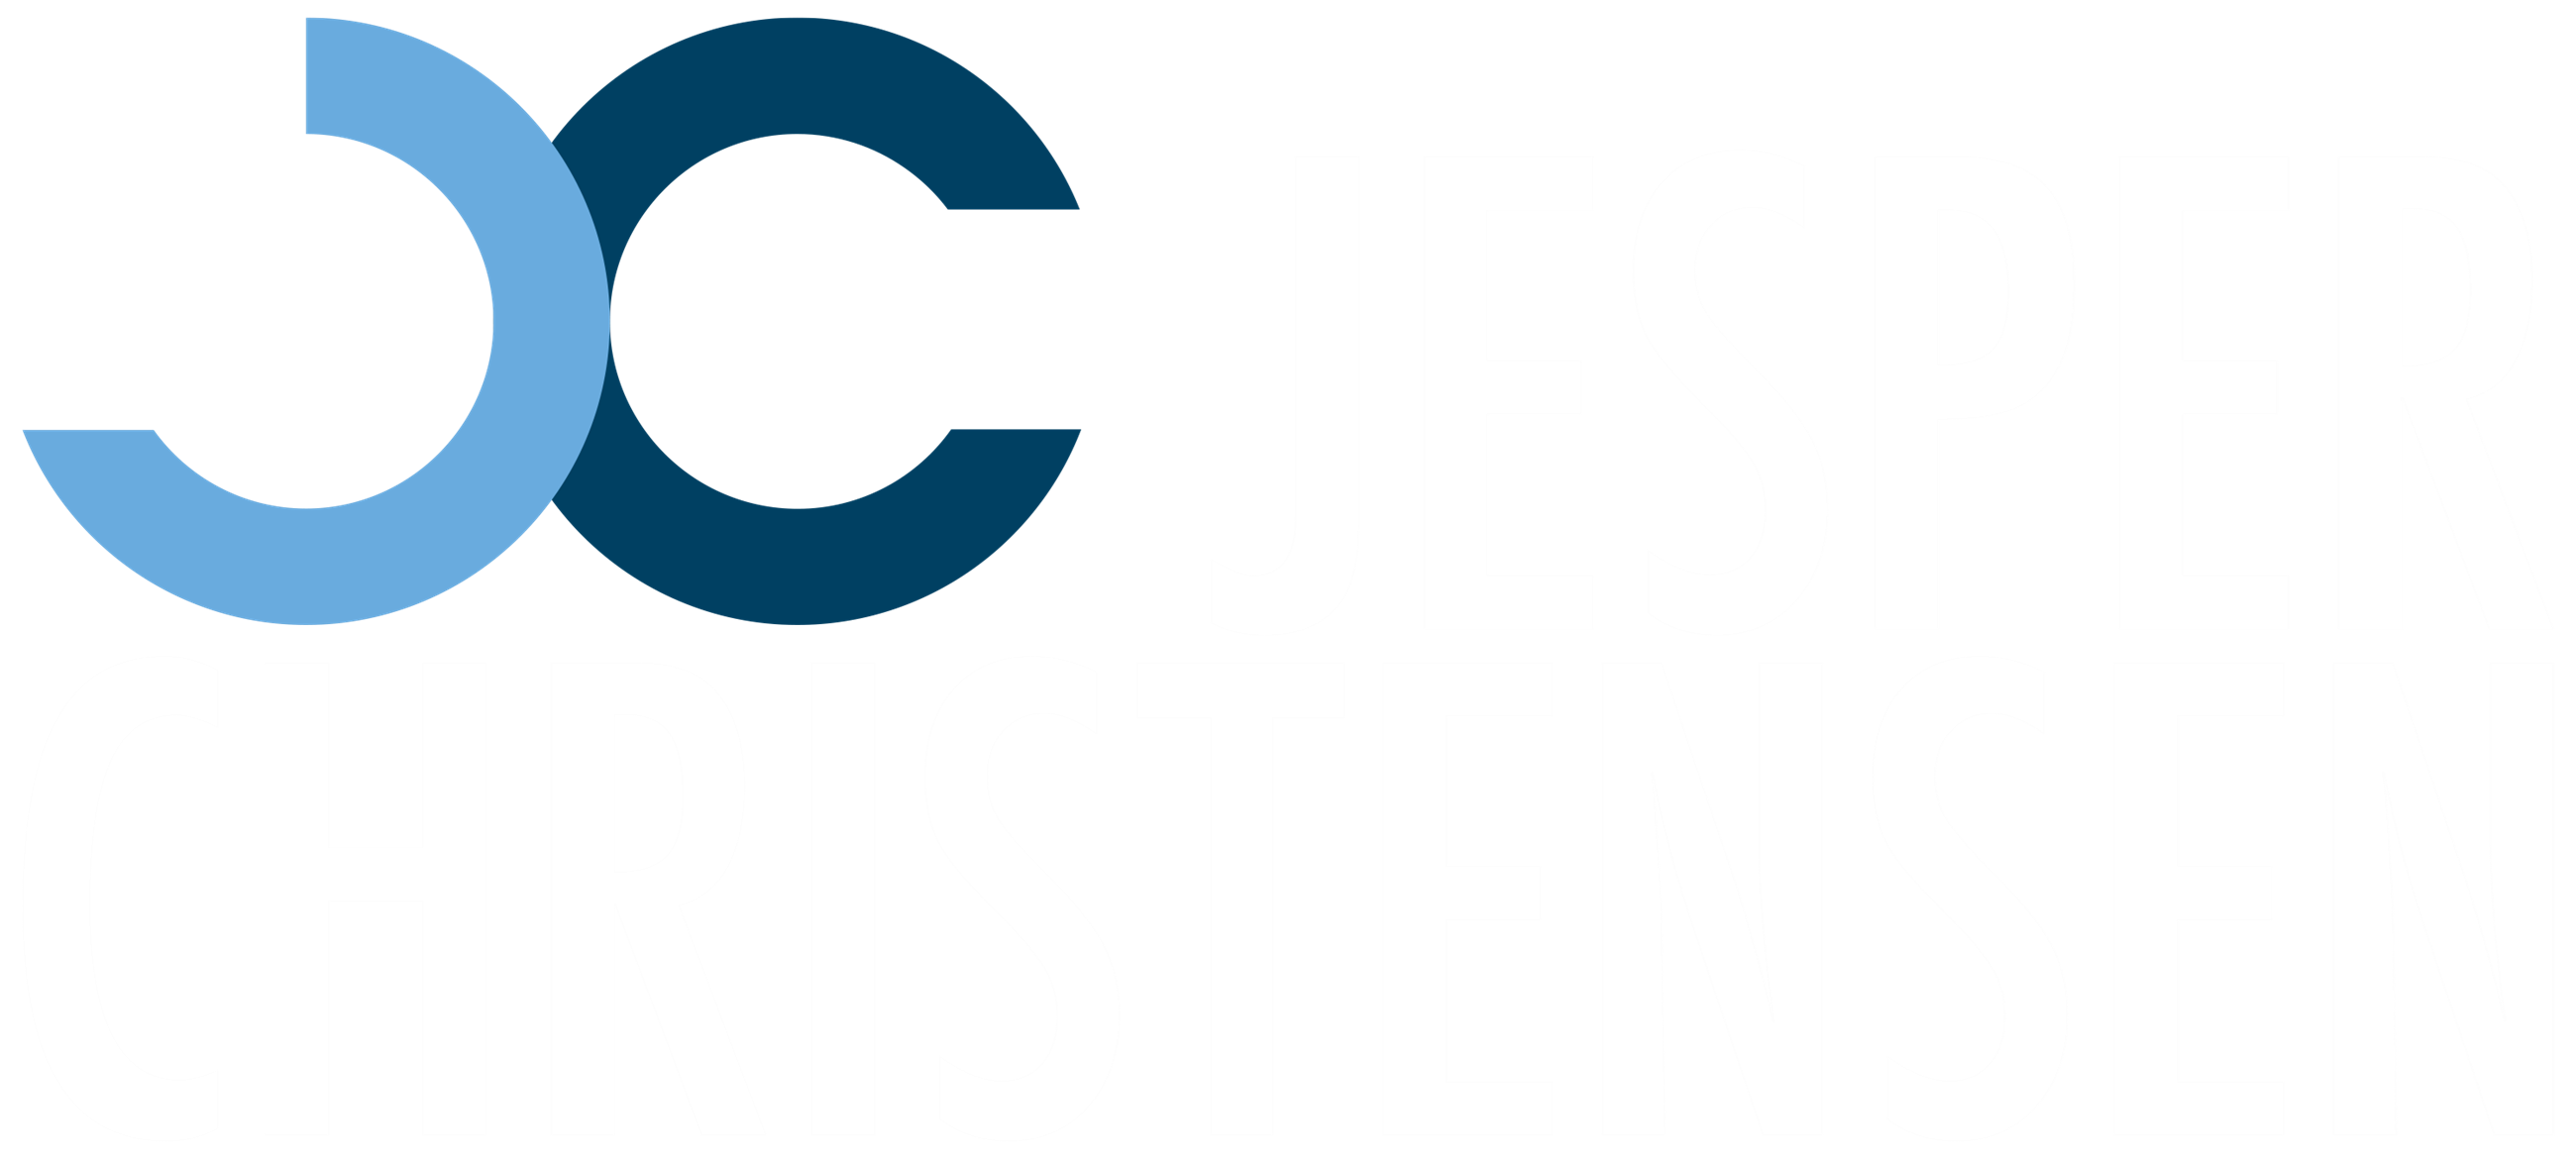 jc-jesper-christensen-rgb-negativ